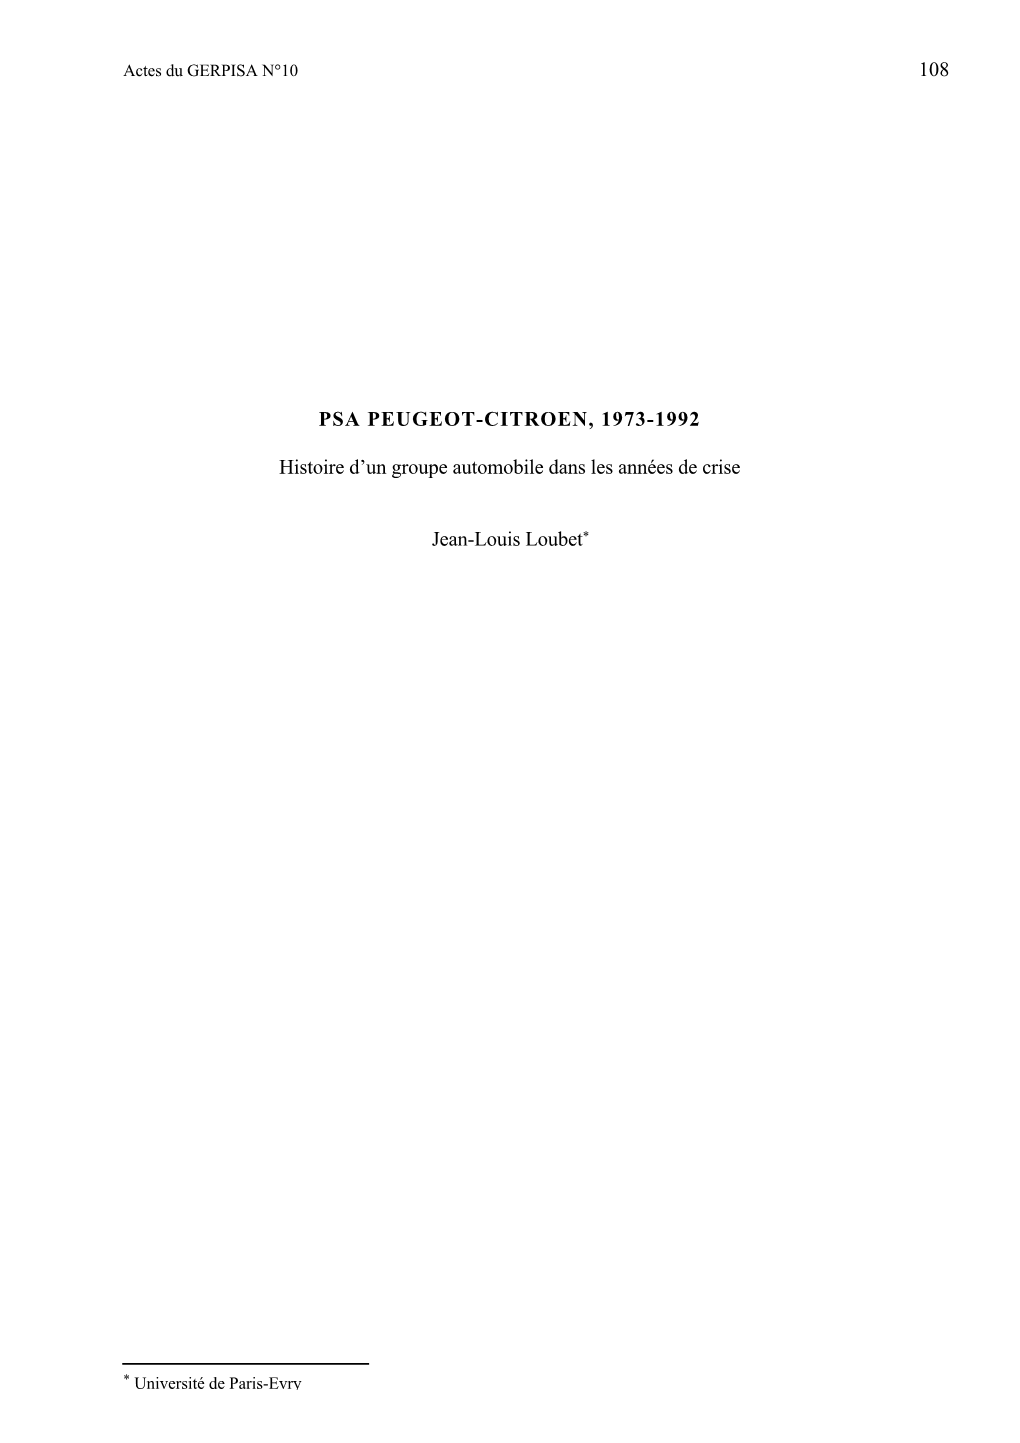 PSA Peugeot Citroën 1973-1992 Histoire D'un Groupe Automobile Dans La Crise